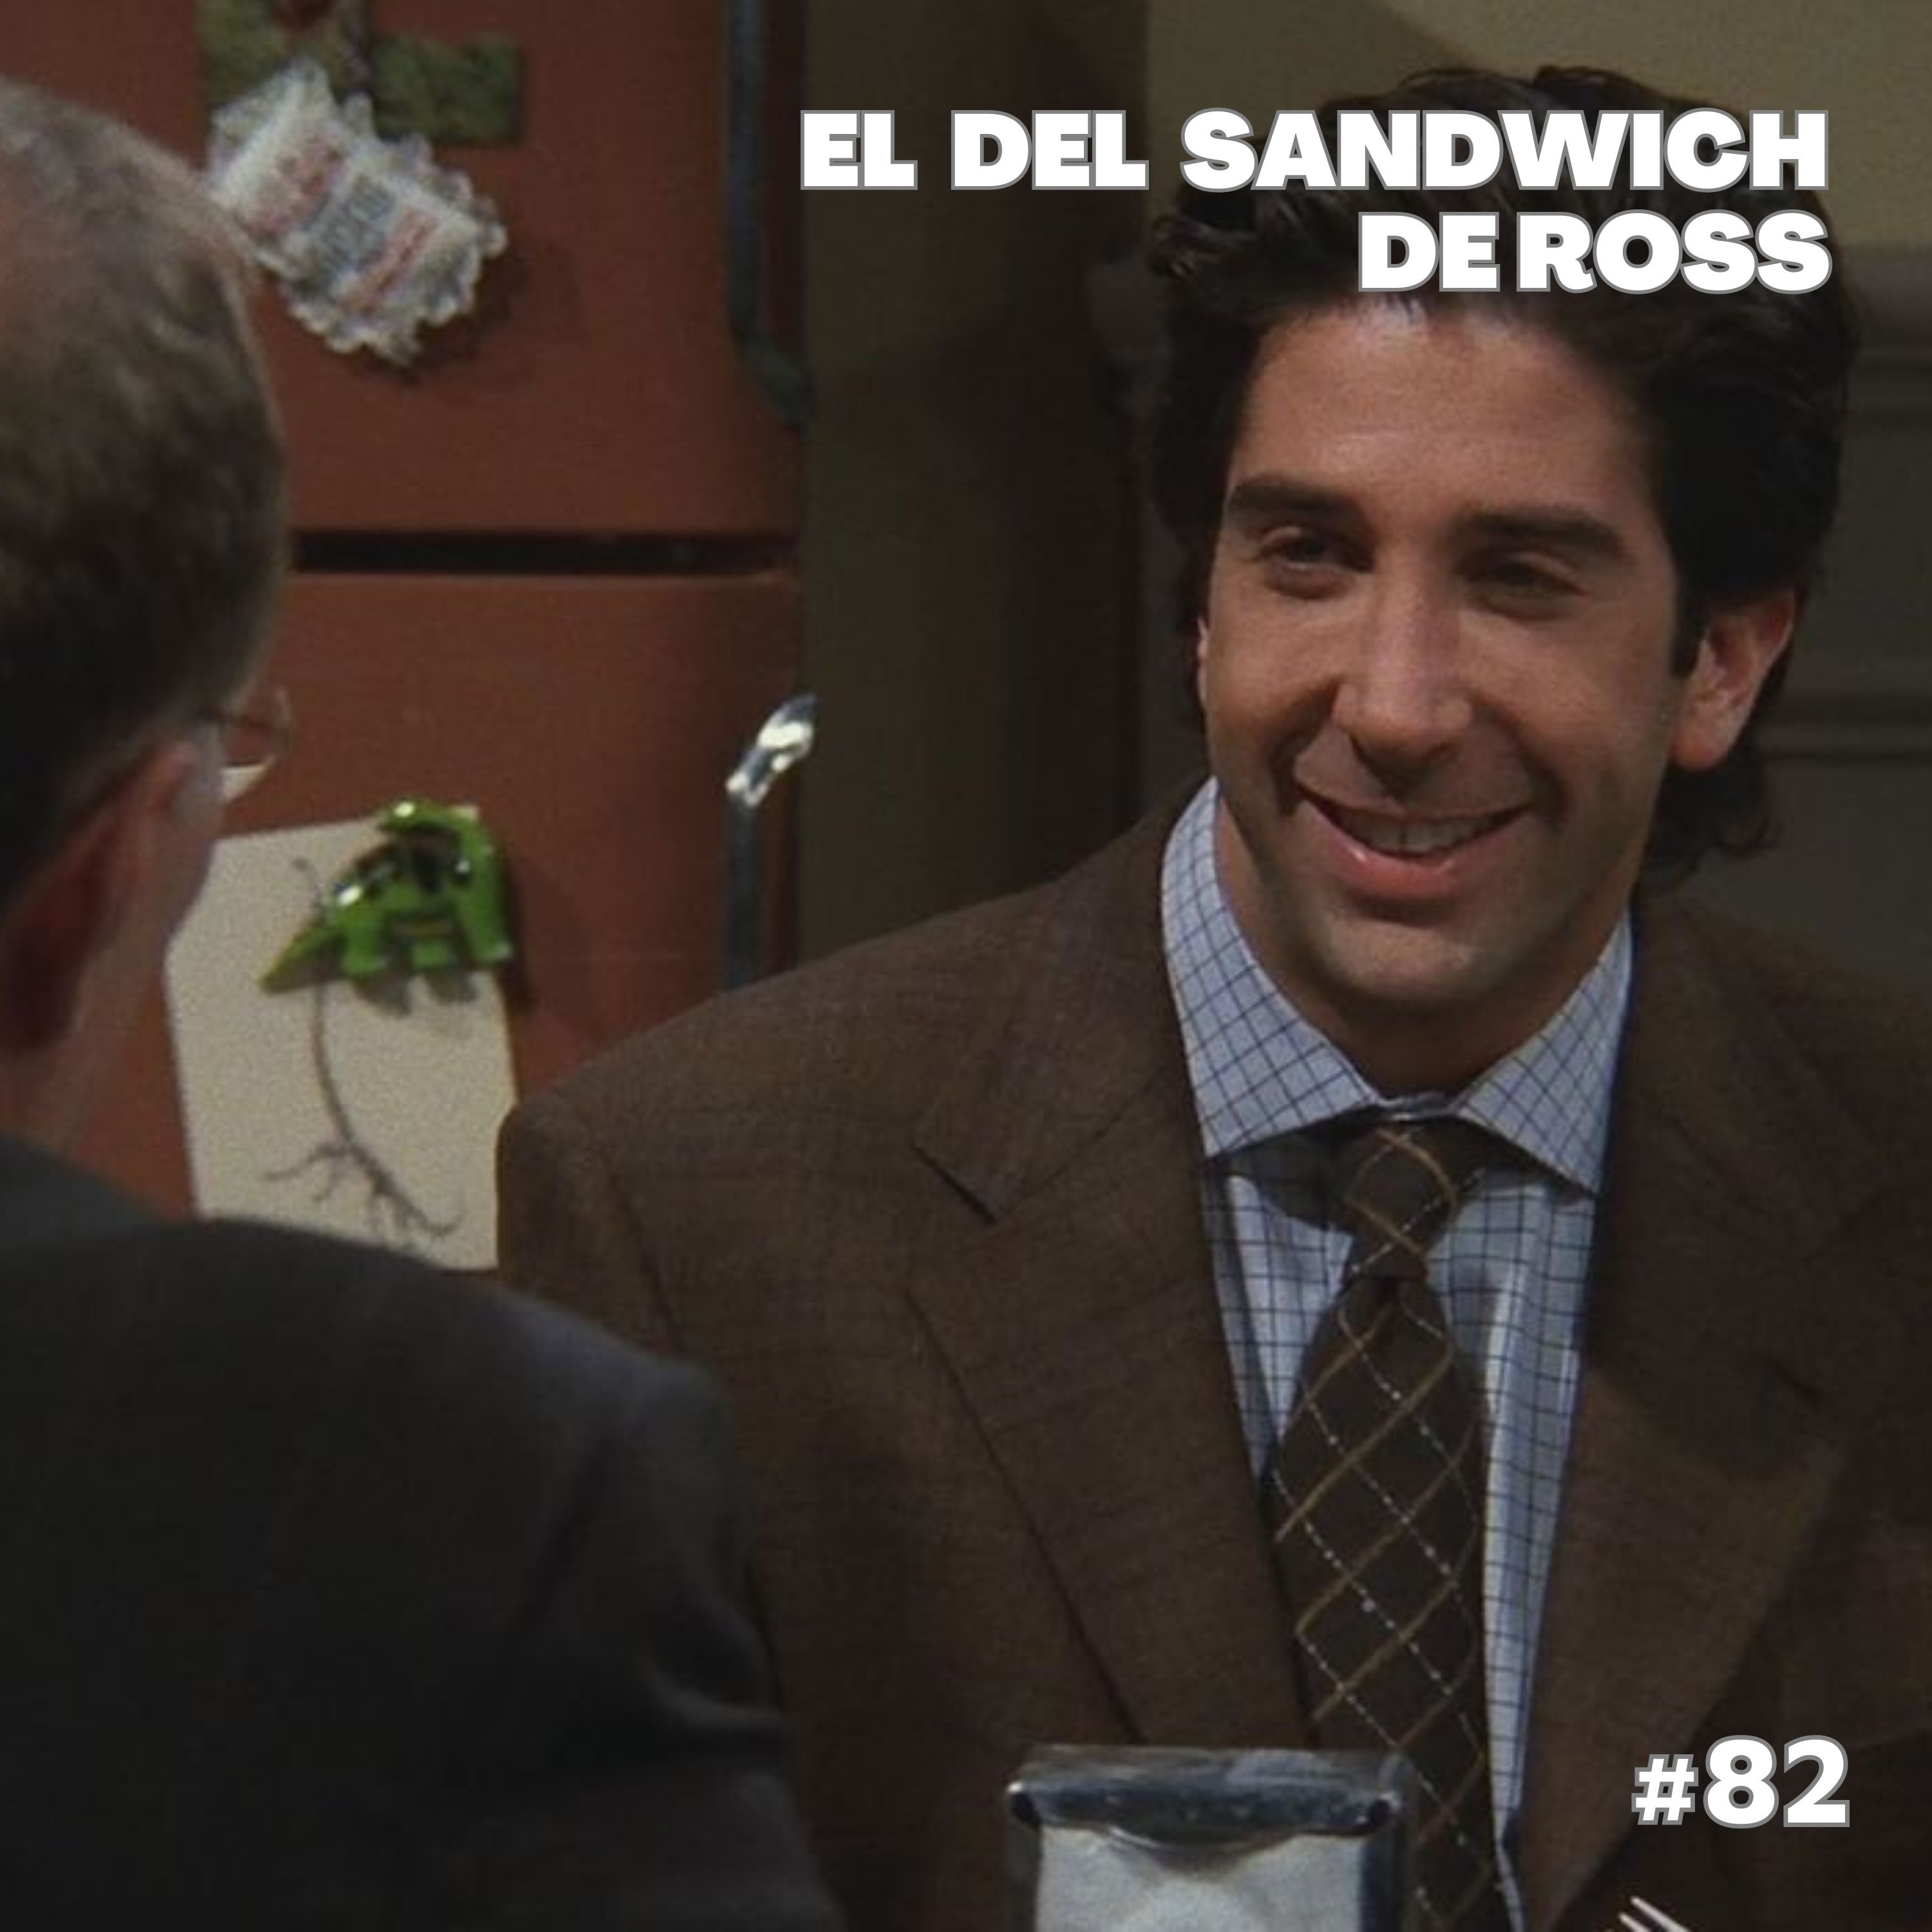 El del sandwich de Ross